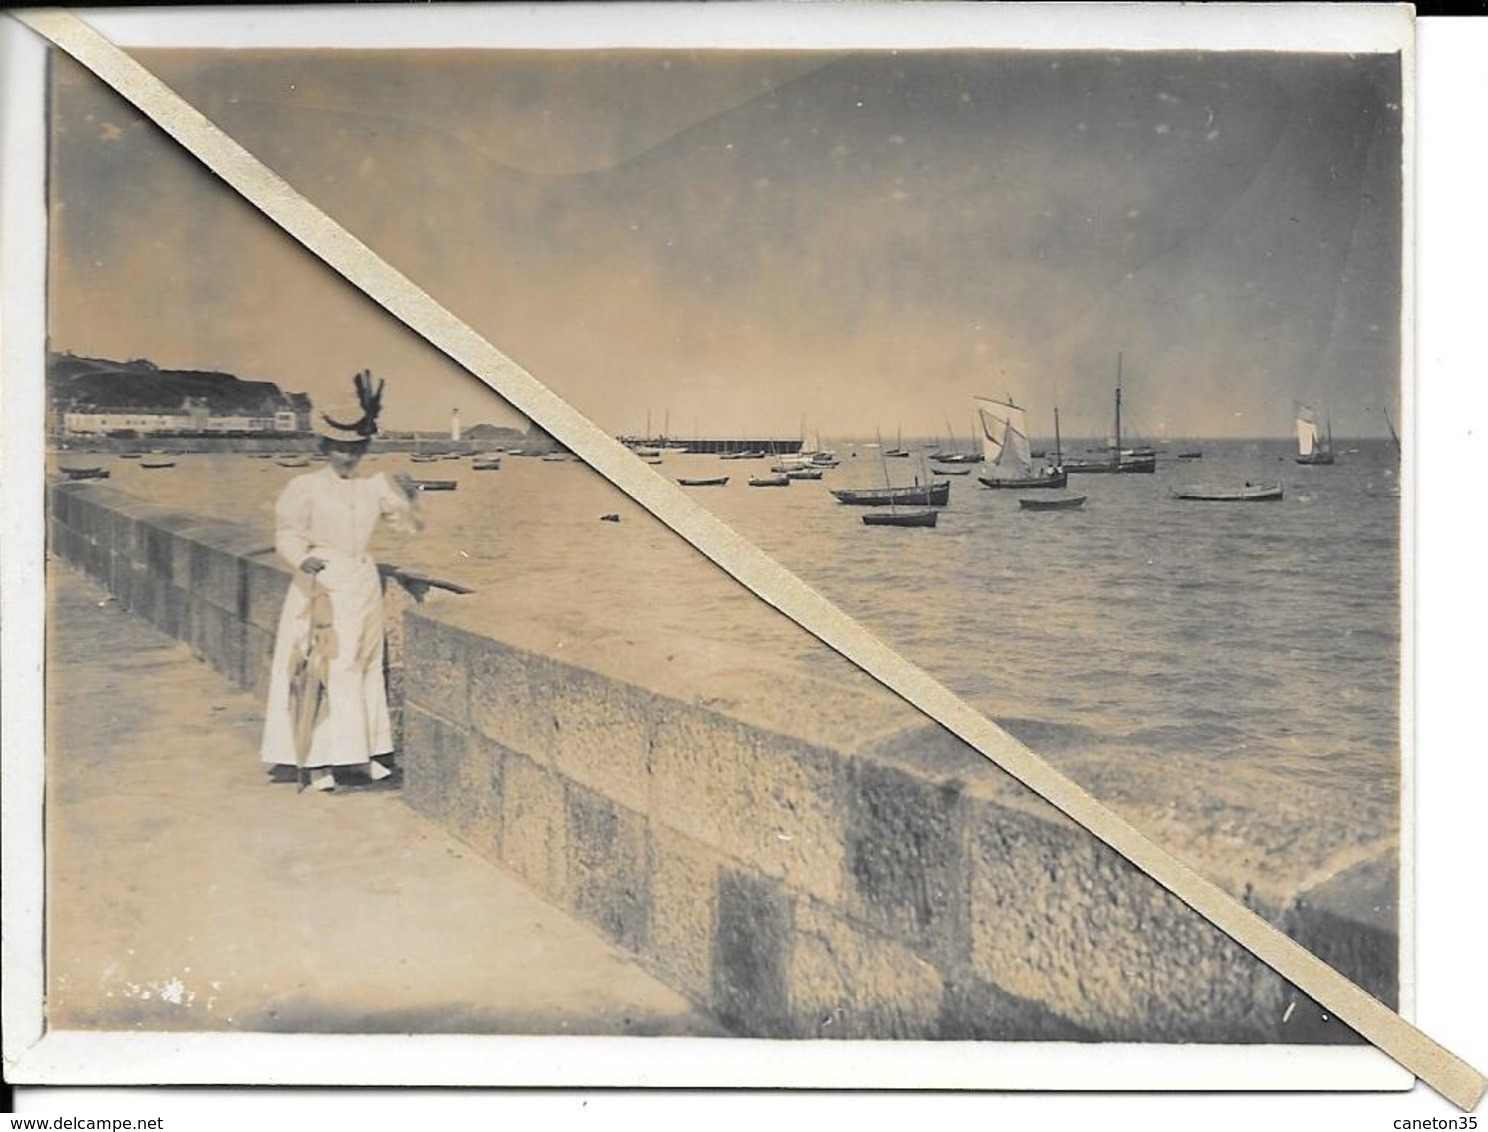 lot 7  photos - cancale scènes sur le port - format 9 x 12 cm, epoque 1900...même famille